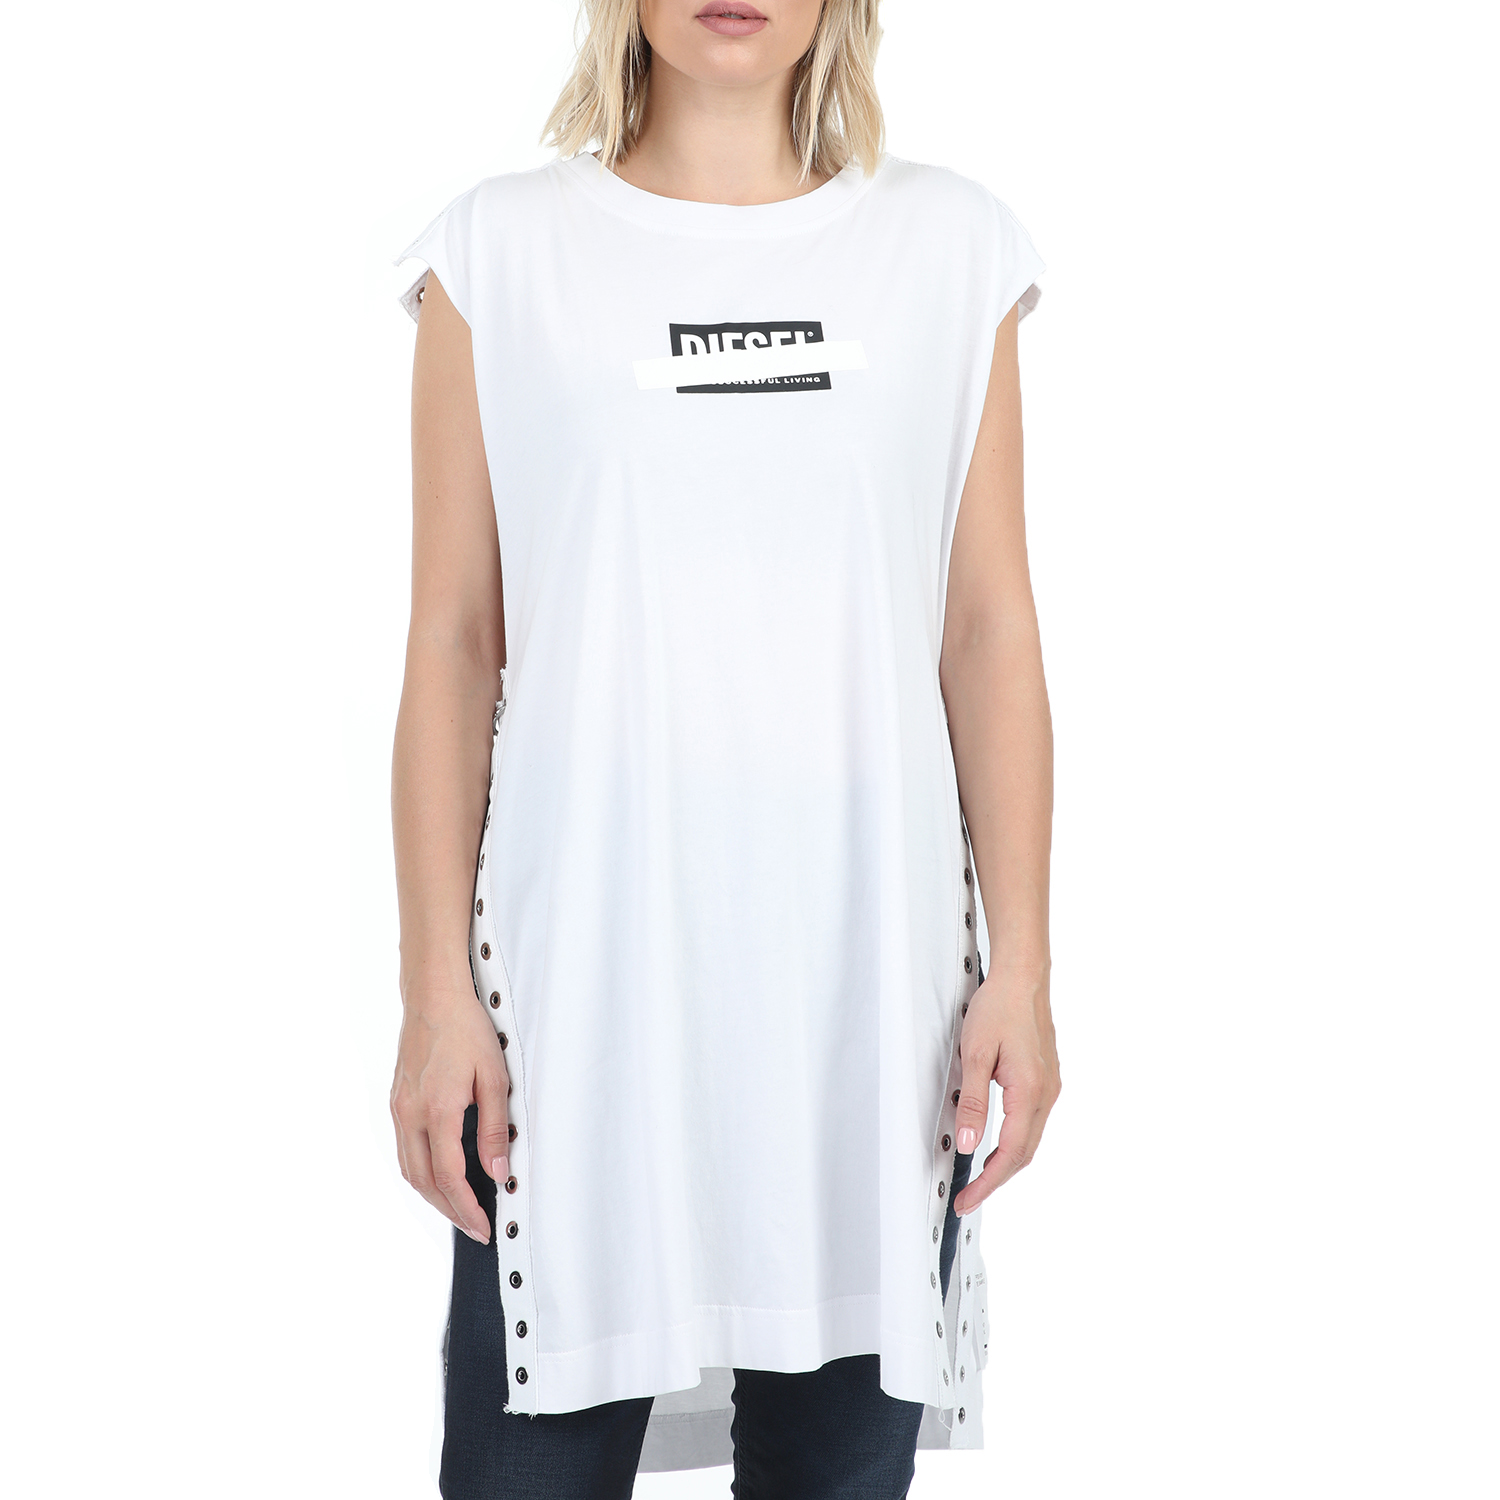 Γυναικεία/Ρούχα/Μπλούζες/Αμάνικες DIESEL - Γυναικείο t-shirt DIESEL T-DESY-C MAGLIETTA λευκό